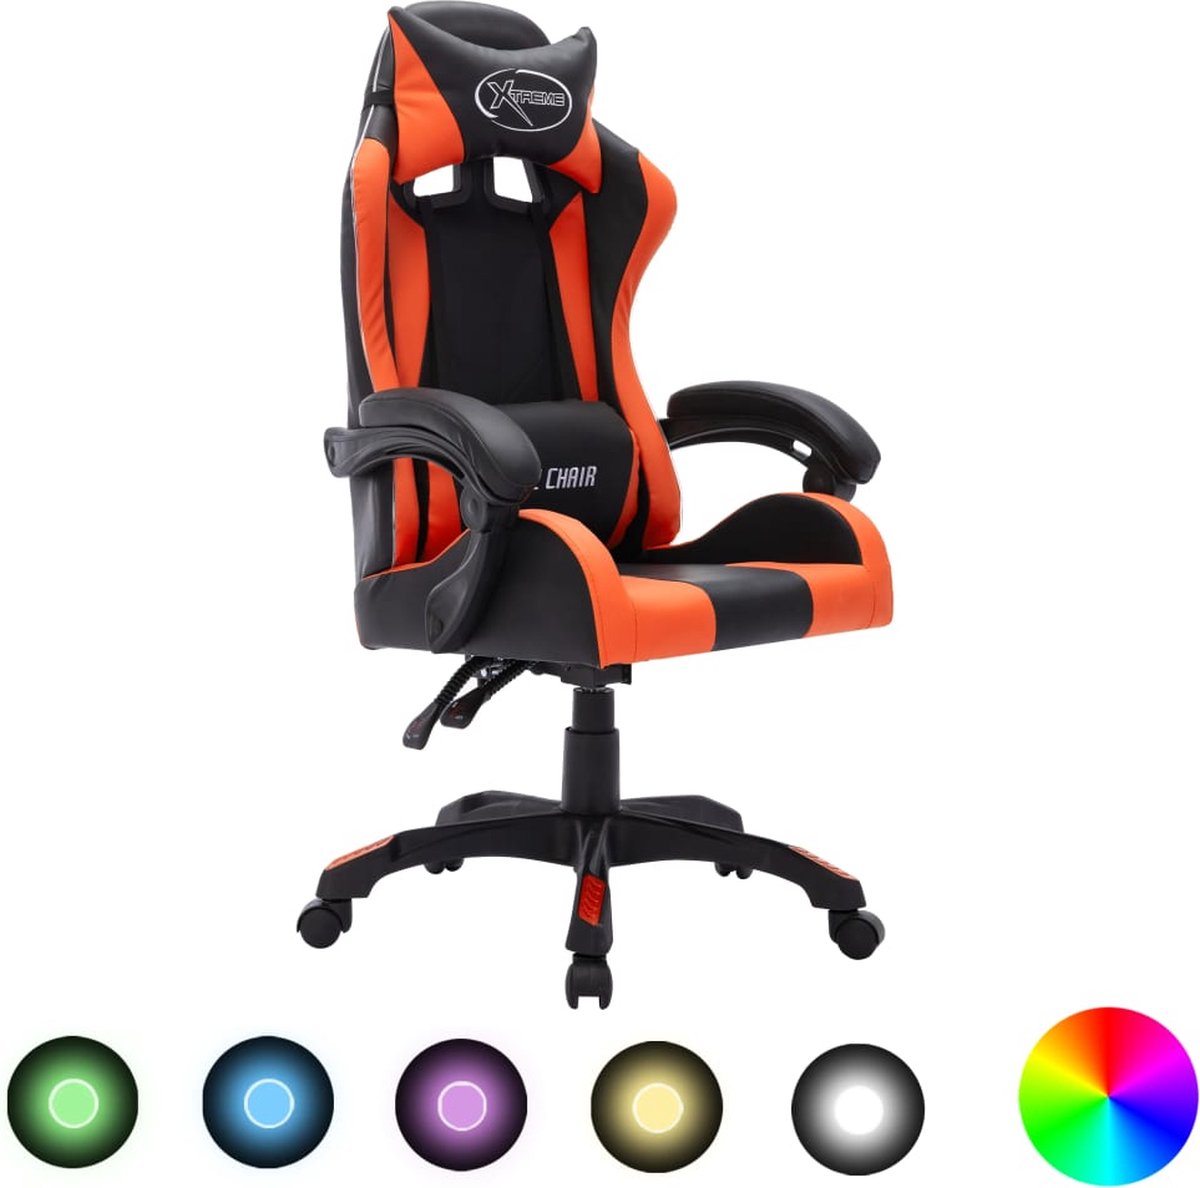 Prolenta Premium - Racestoel met RGB LED-verlichting kunstleer oranje en zwart